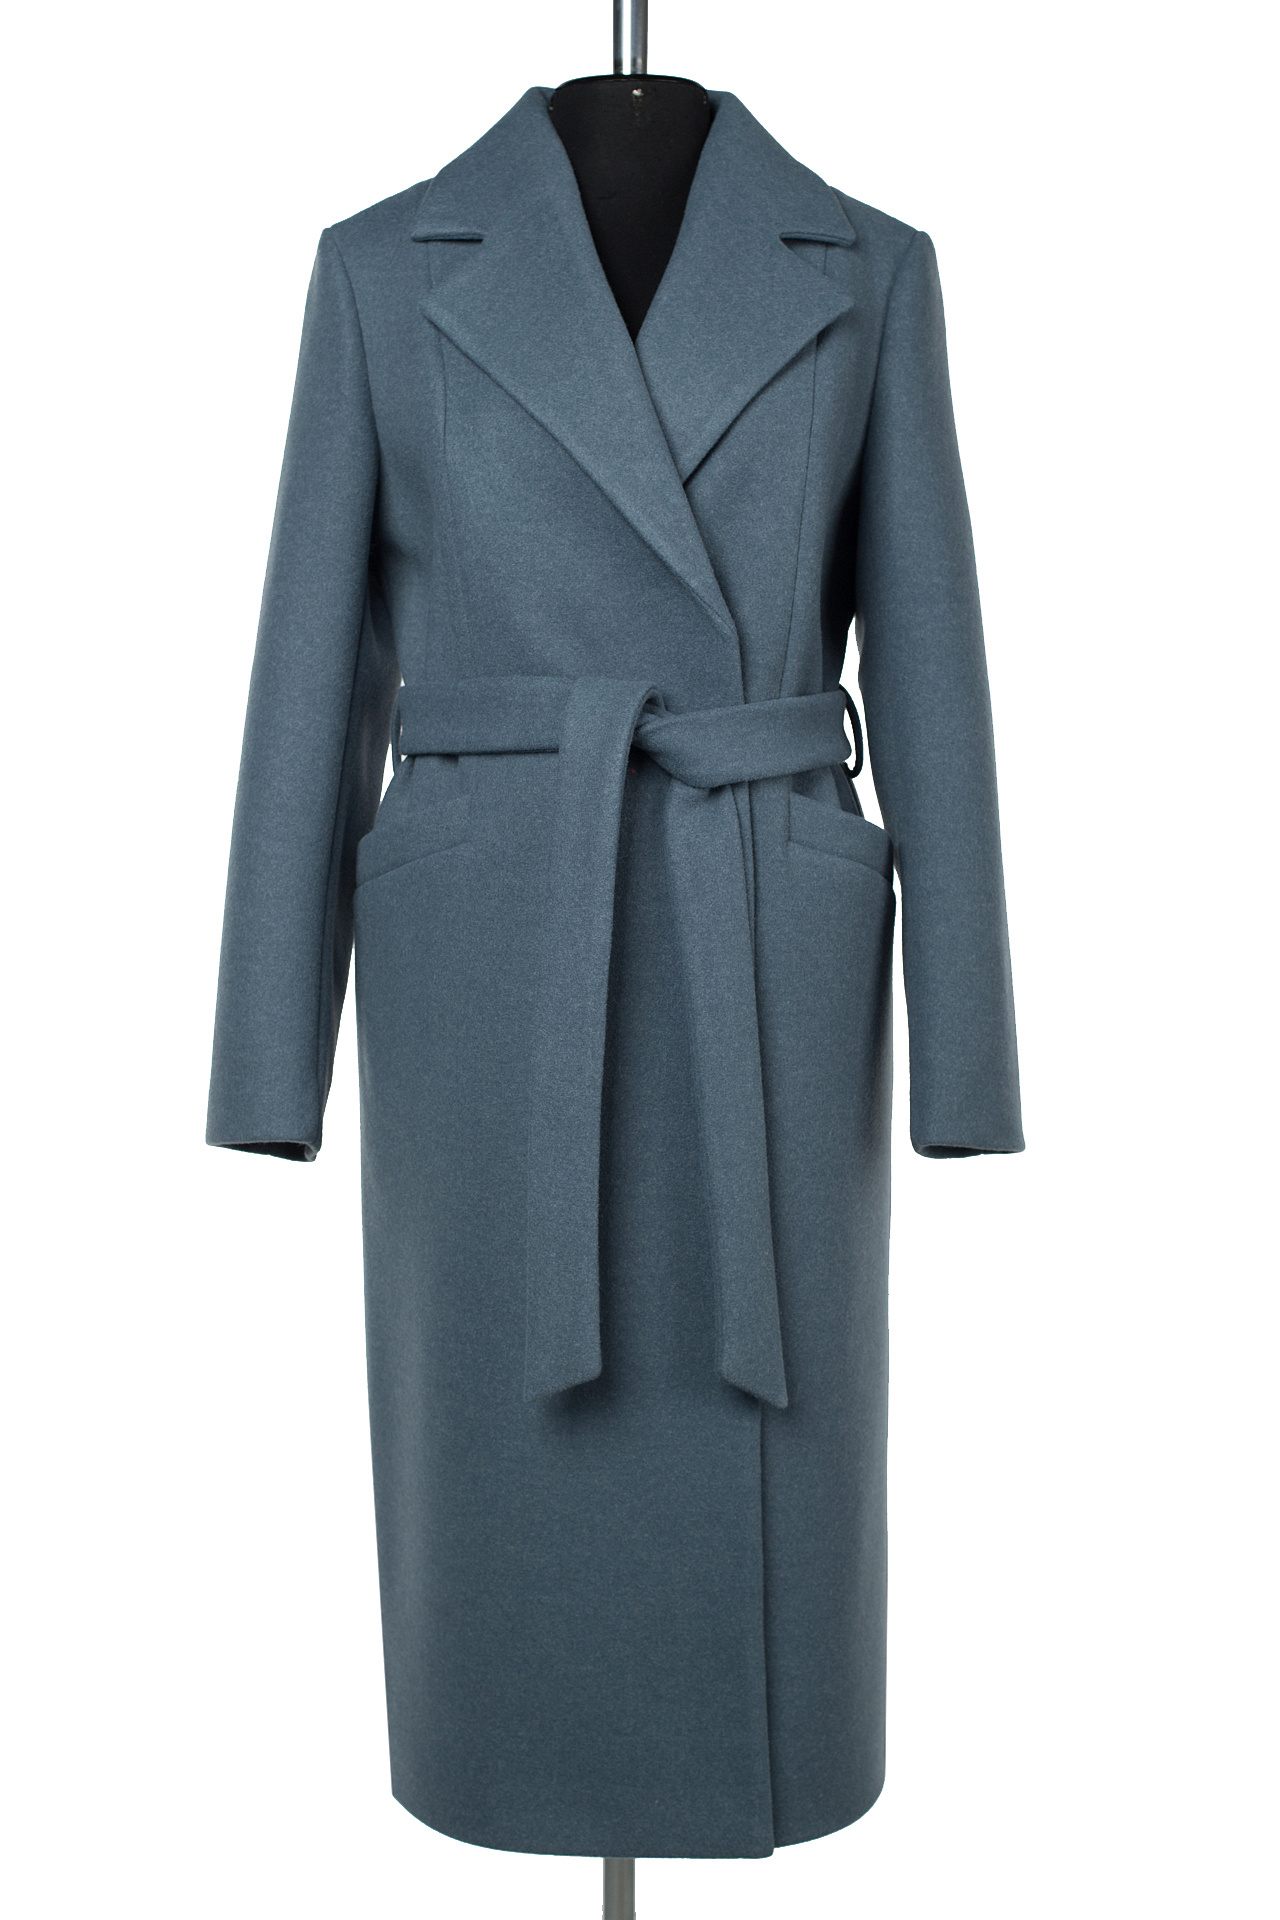 Пальто женское демисезонное 22730 (Lilac)